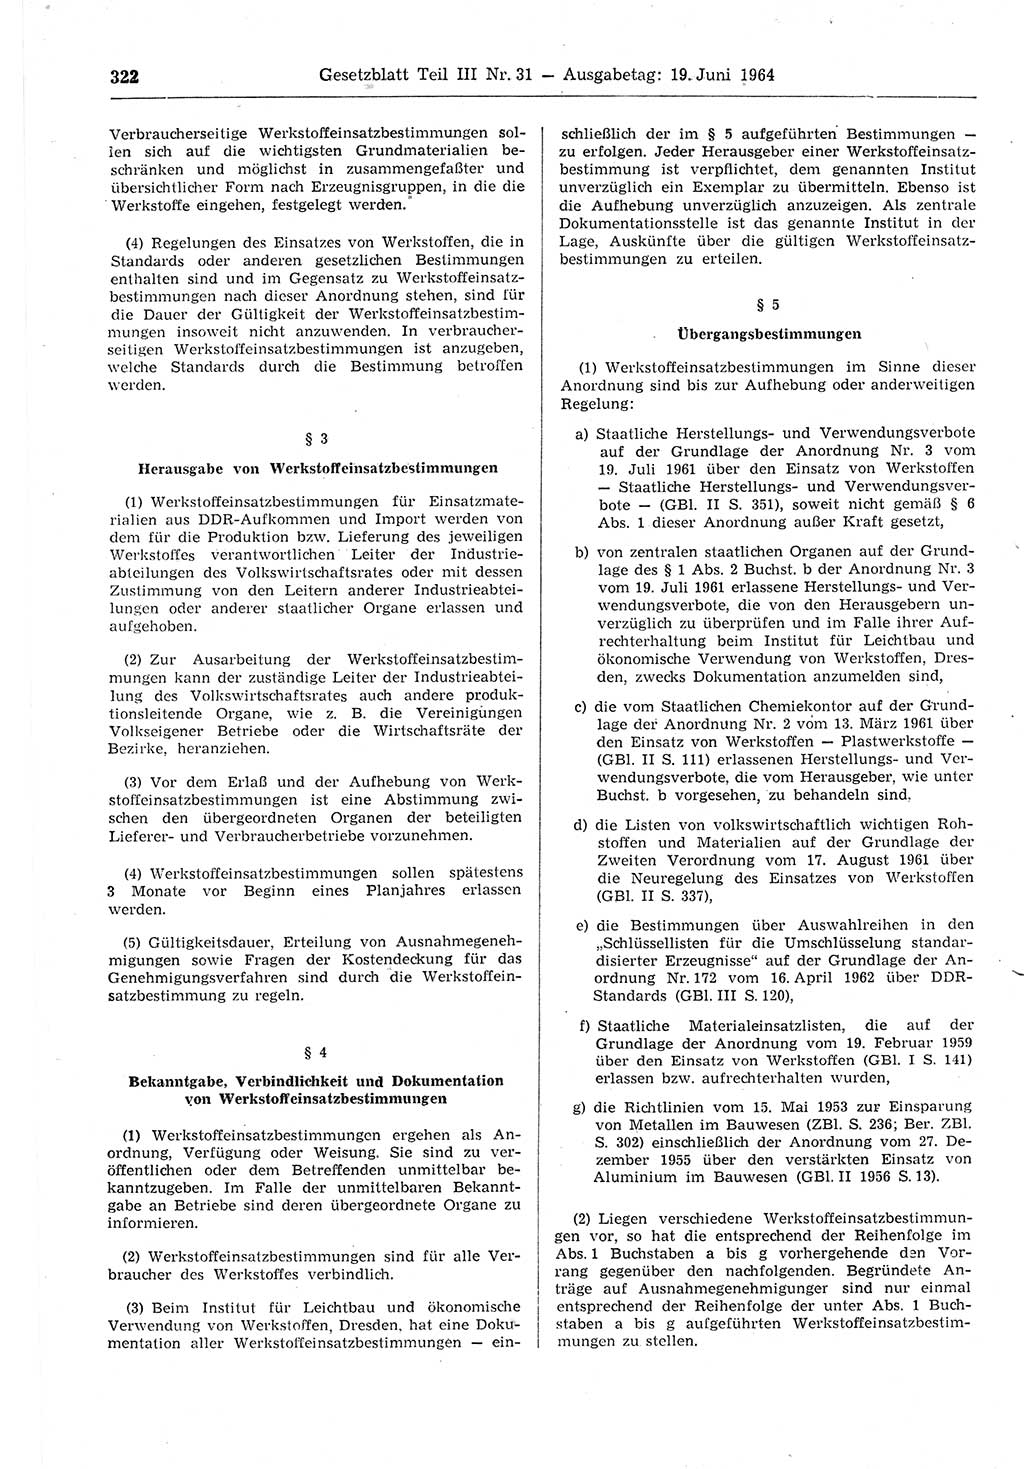 Gesetzblatt (GBl.) der Deutschen Demokratischen Republik (DDR) Teil ⅠⅠⅠ 1964, Seite 322 (GBl. DDR ⅠⅠⅠ 1964, S. 322)